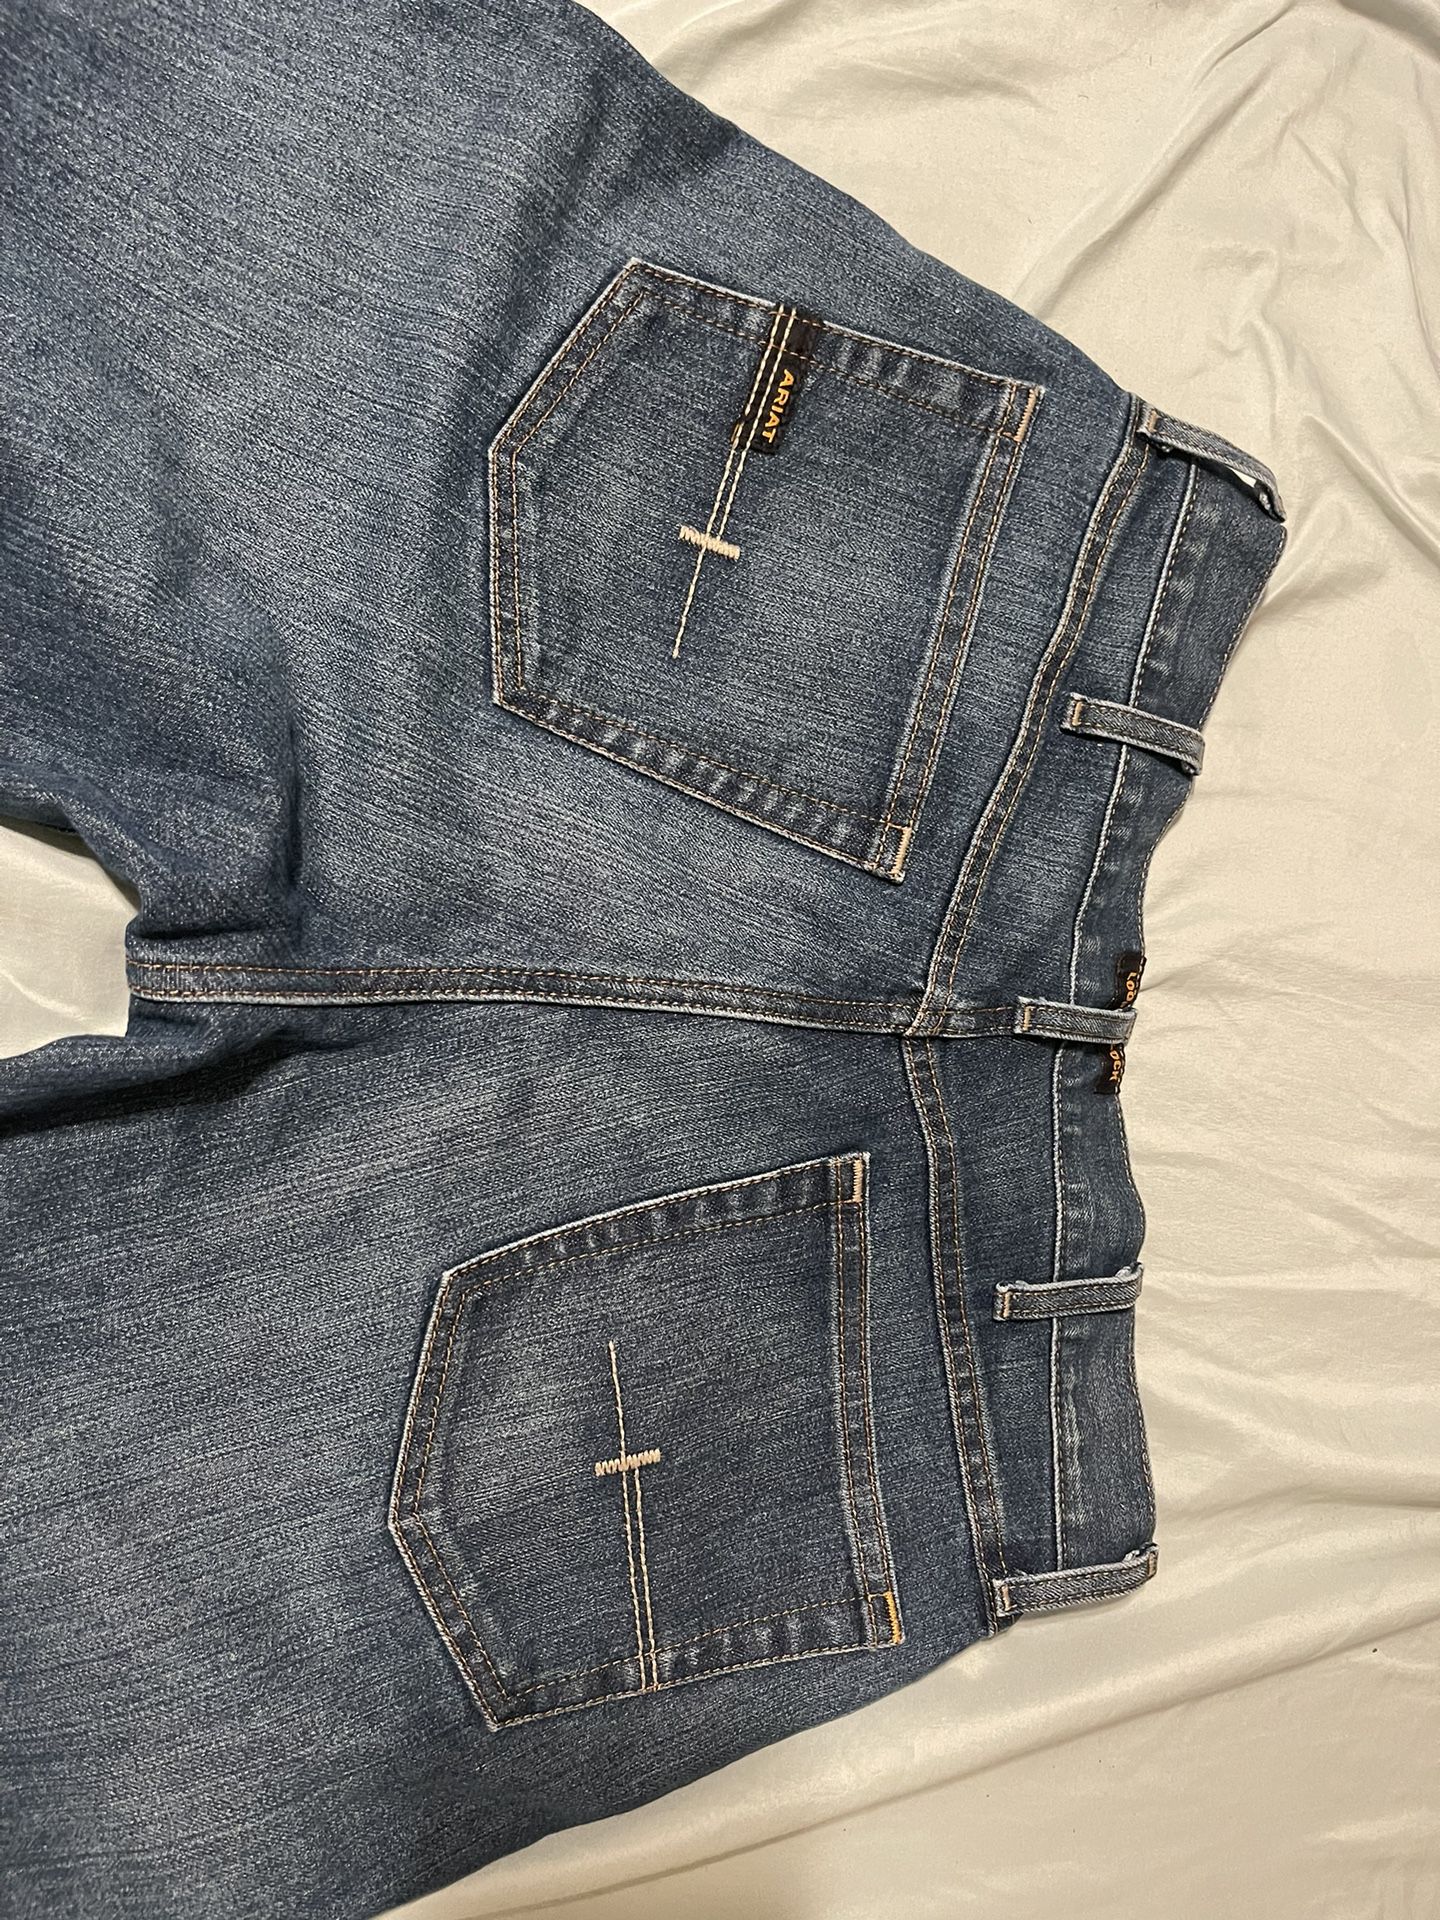 Men’s Ariat Jeans 